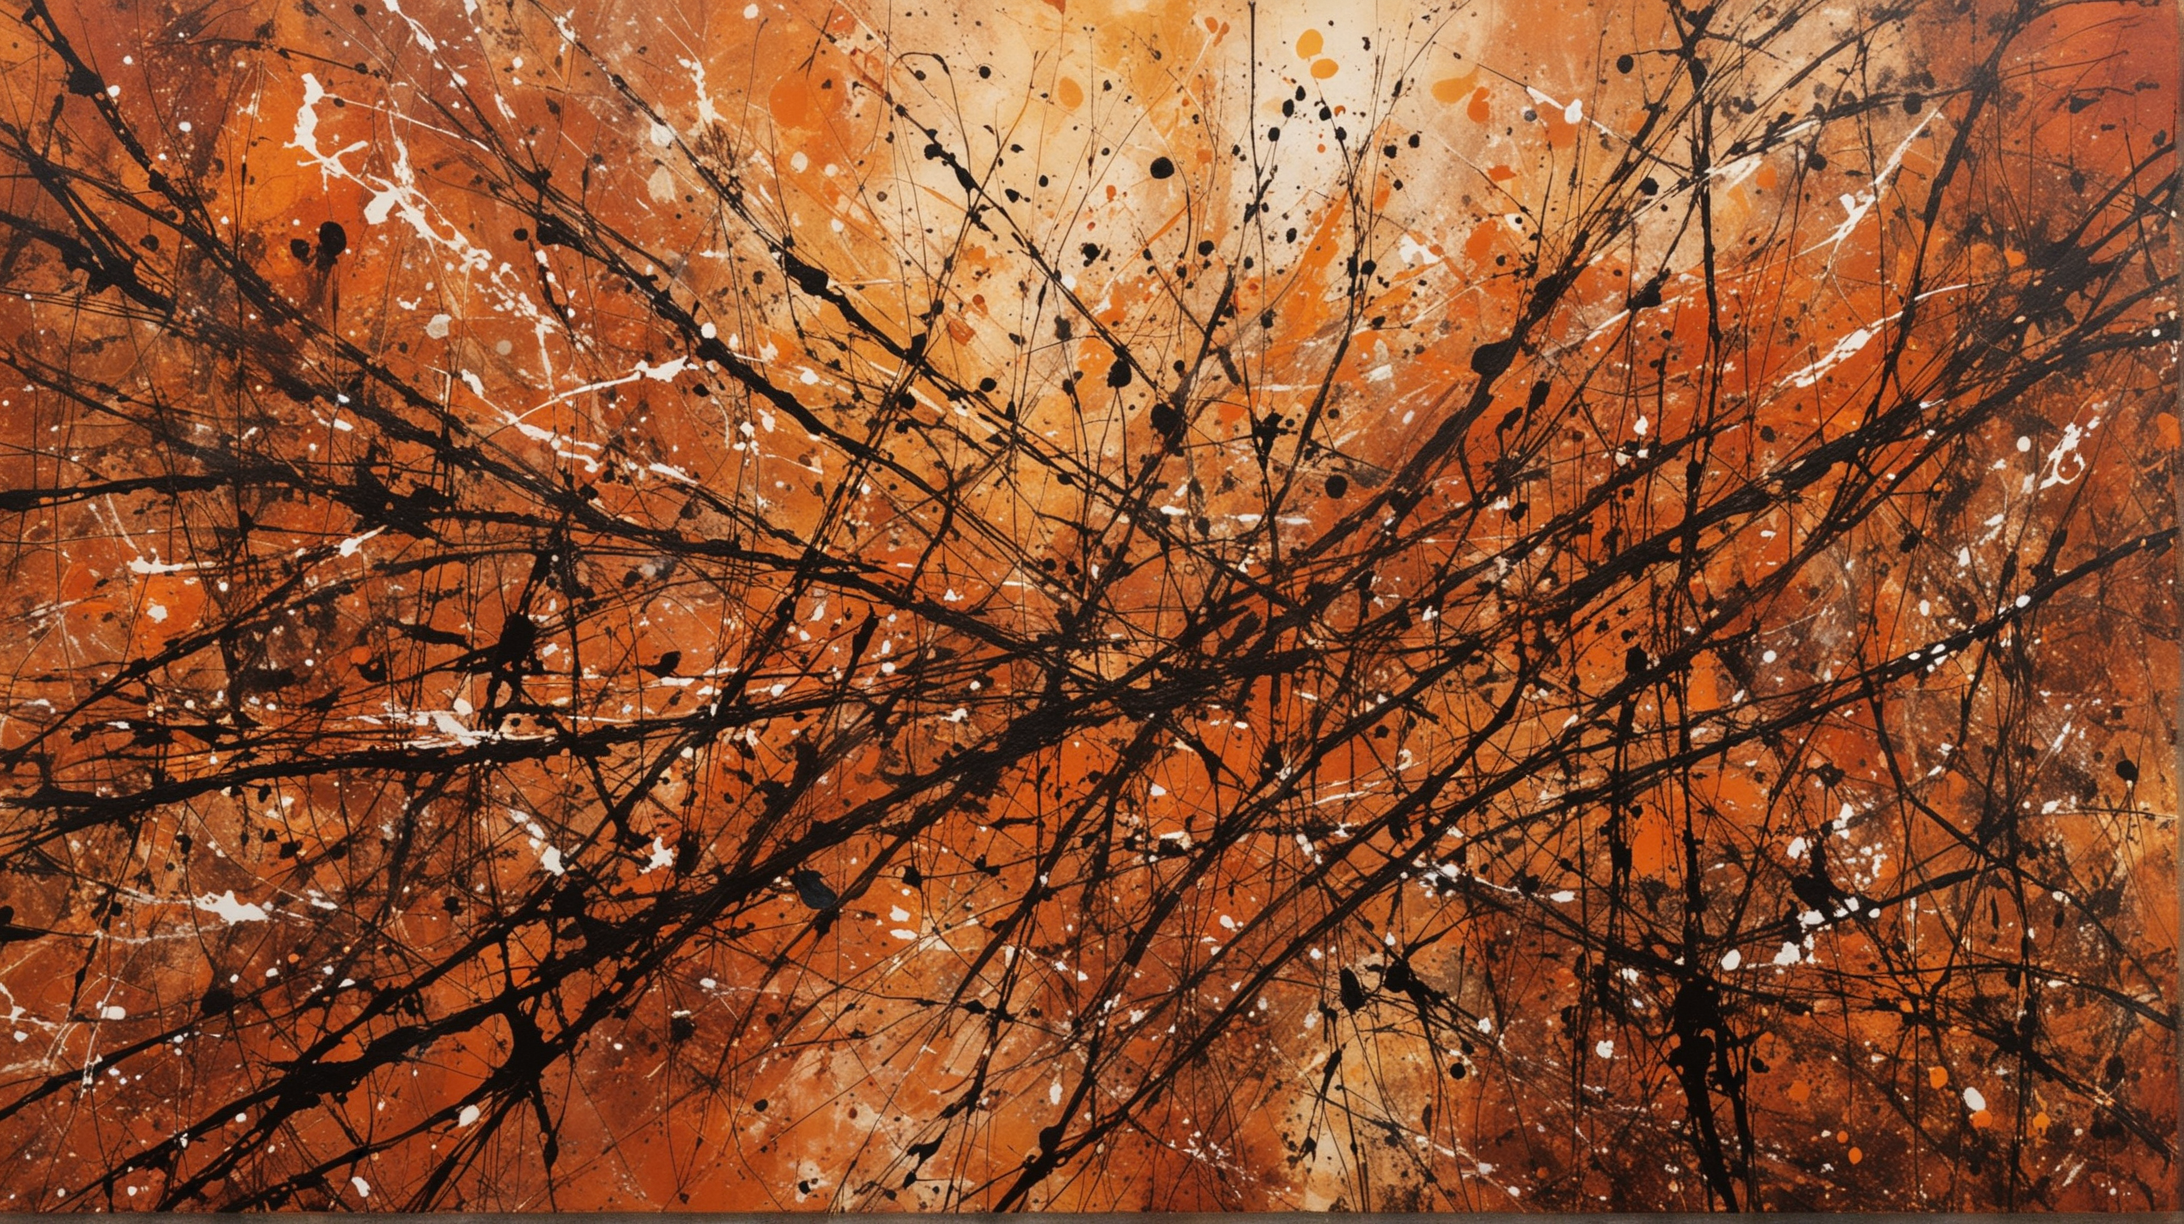 Vibrant Abstract Art Jackson Pollock Style Warm Tones Splash Painting